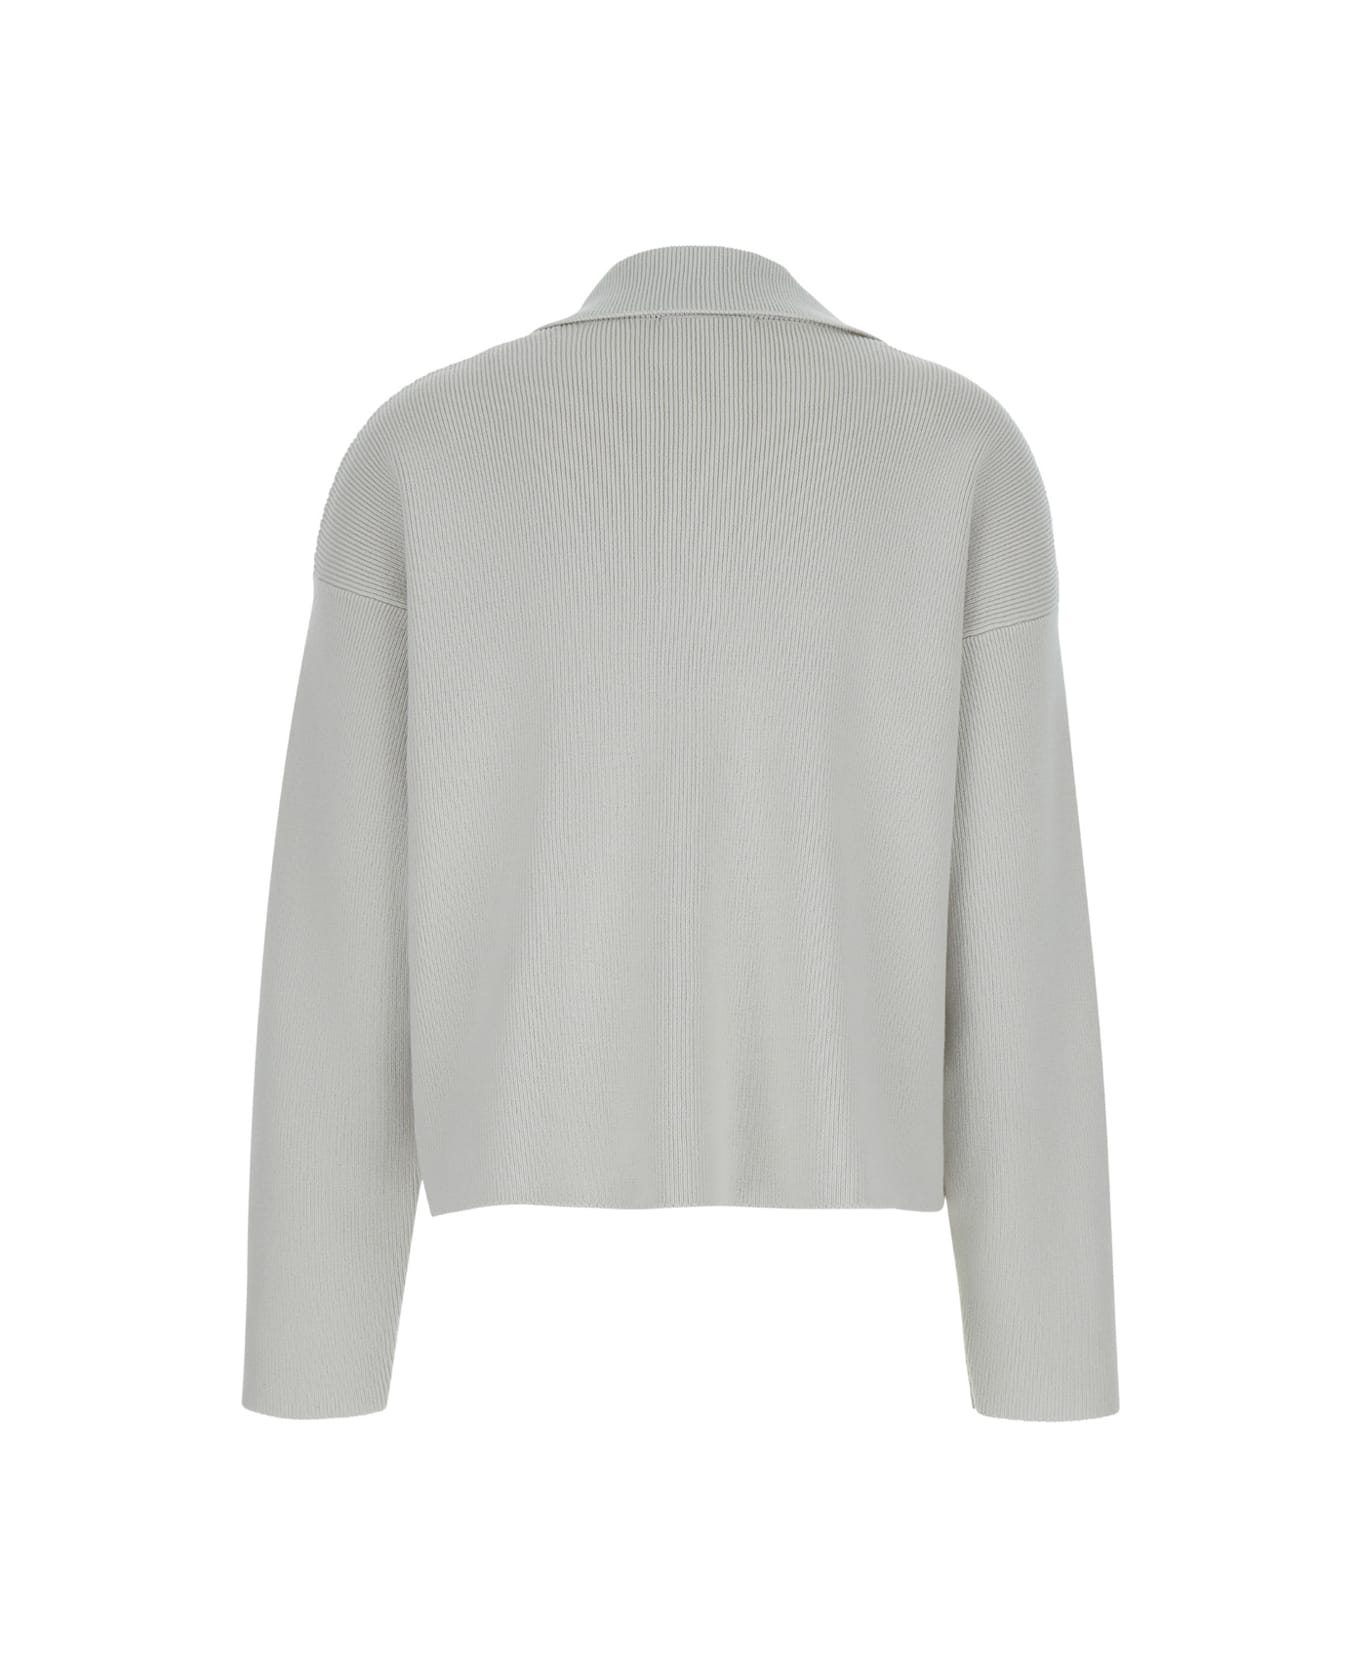 Ami Alexandre Mattiussi White Polo Sweater With Embroidered Ami De Coeur Logo In Cotton Woman - White Tシャツ